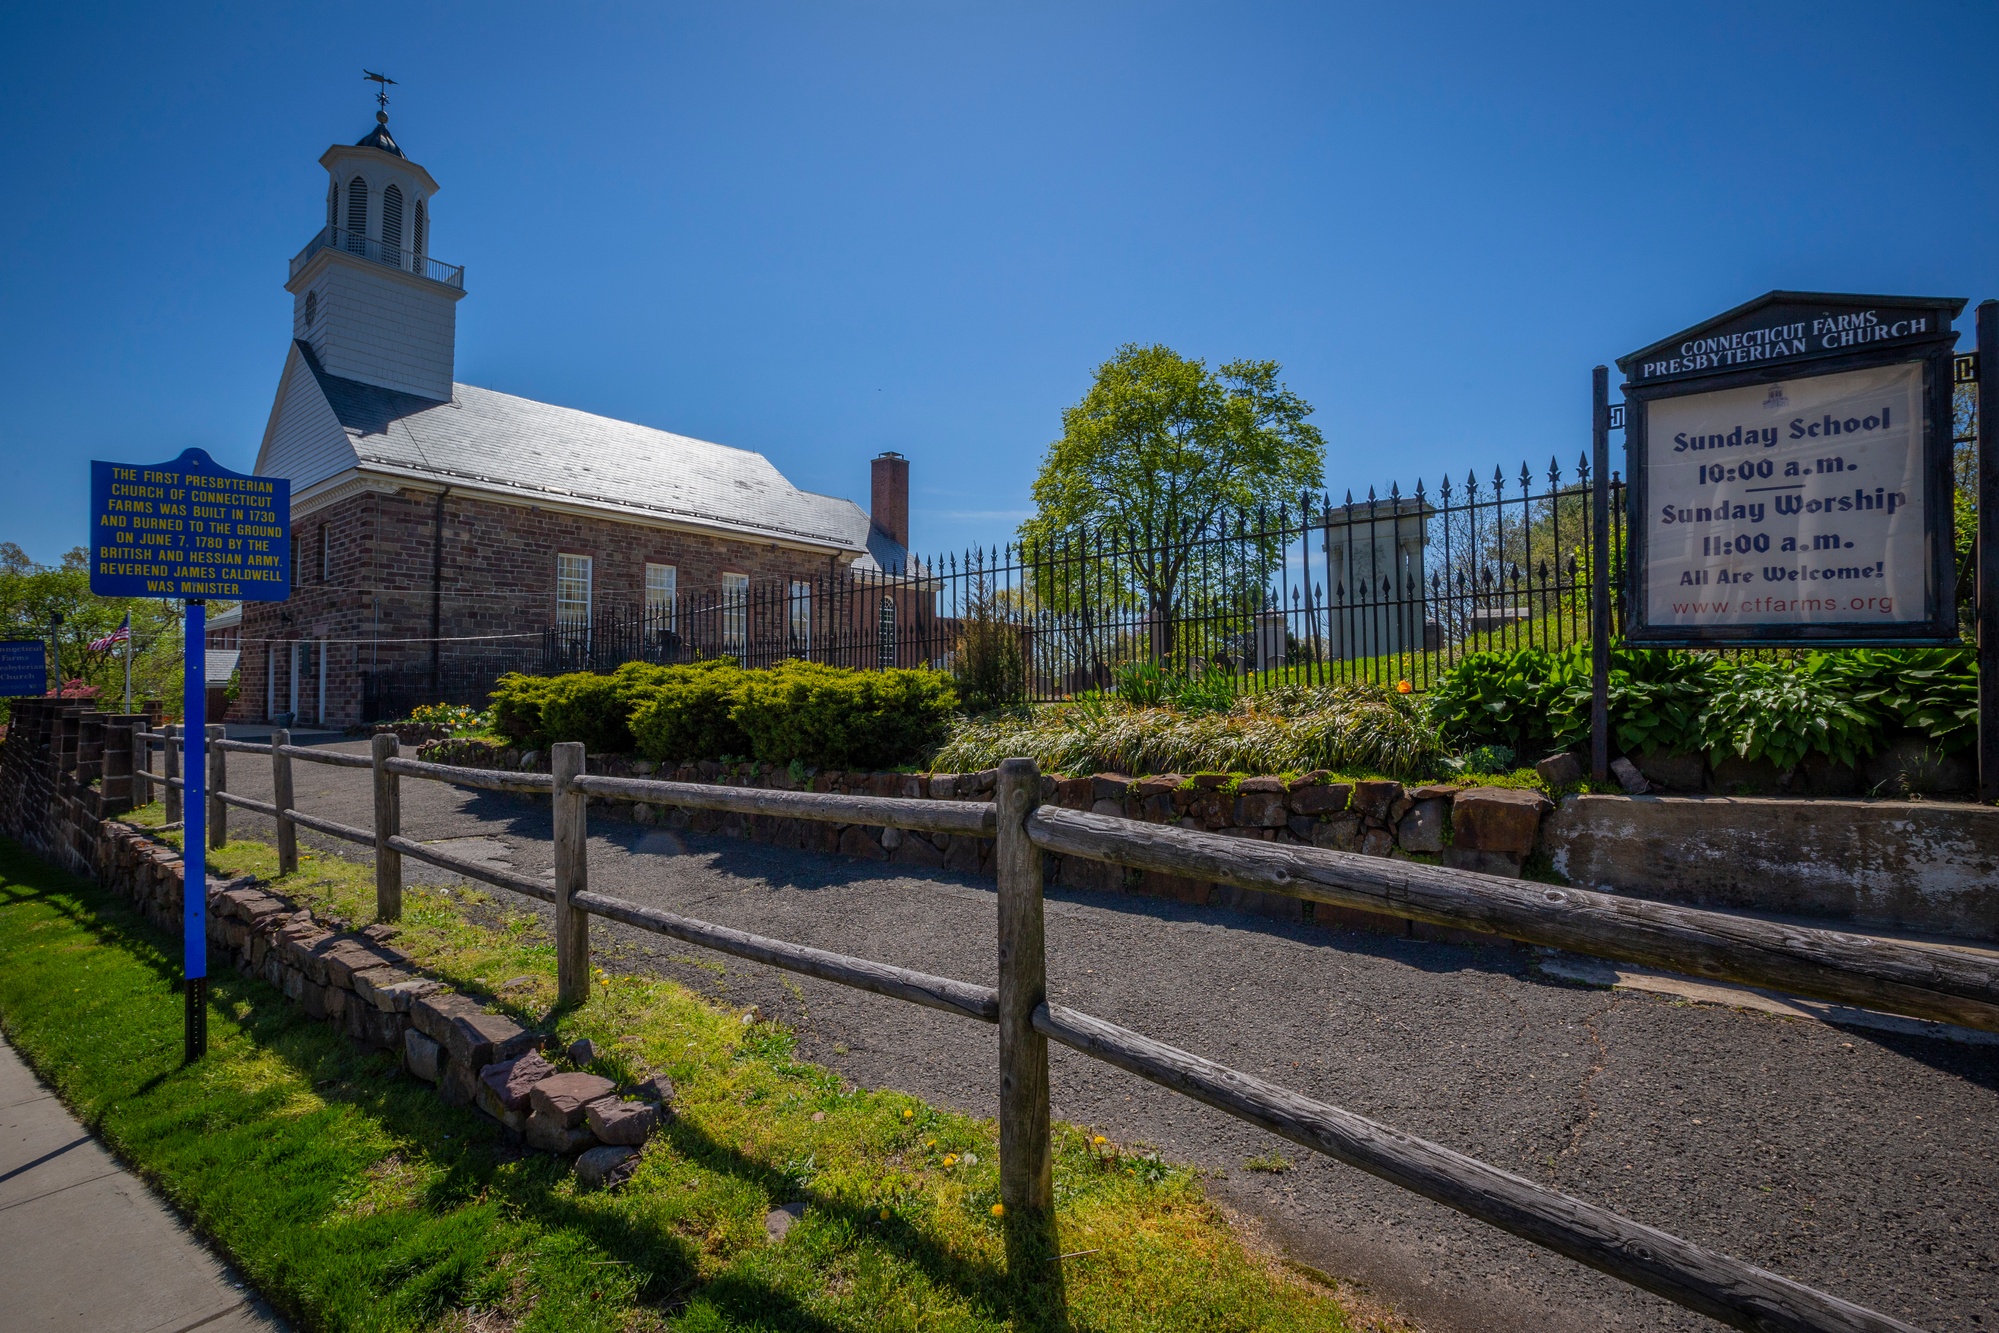 Union NJ: Connecticut Farms Presbyterian Church and Cemetery